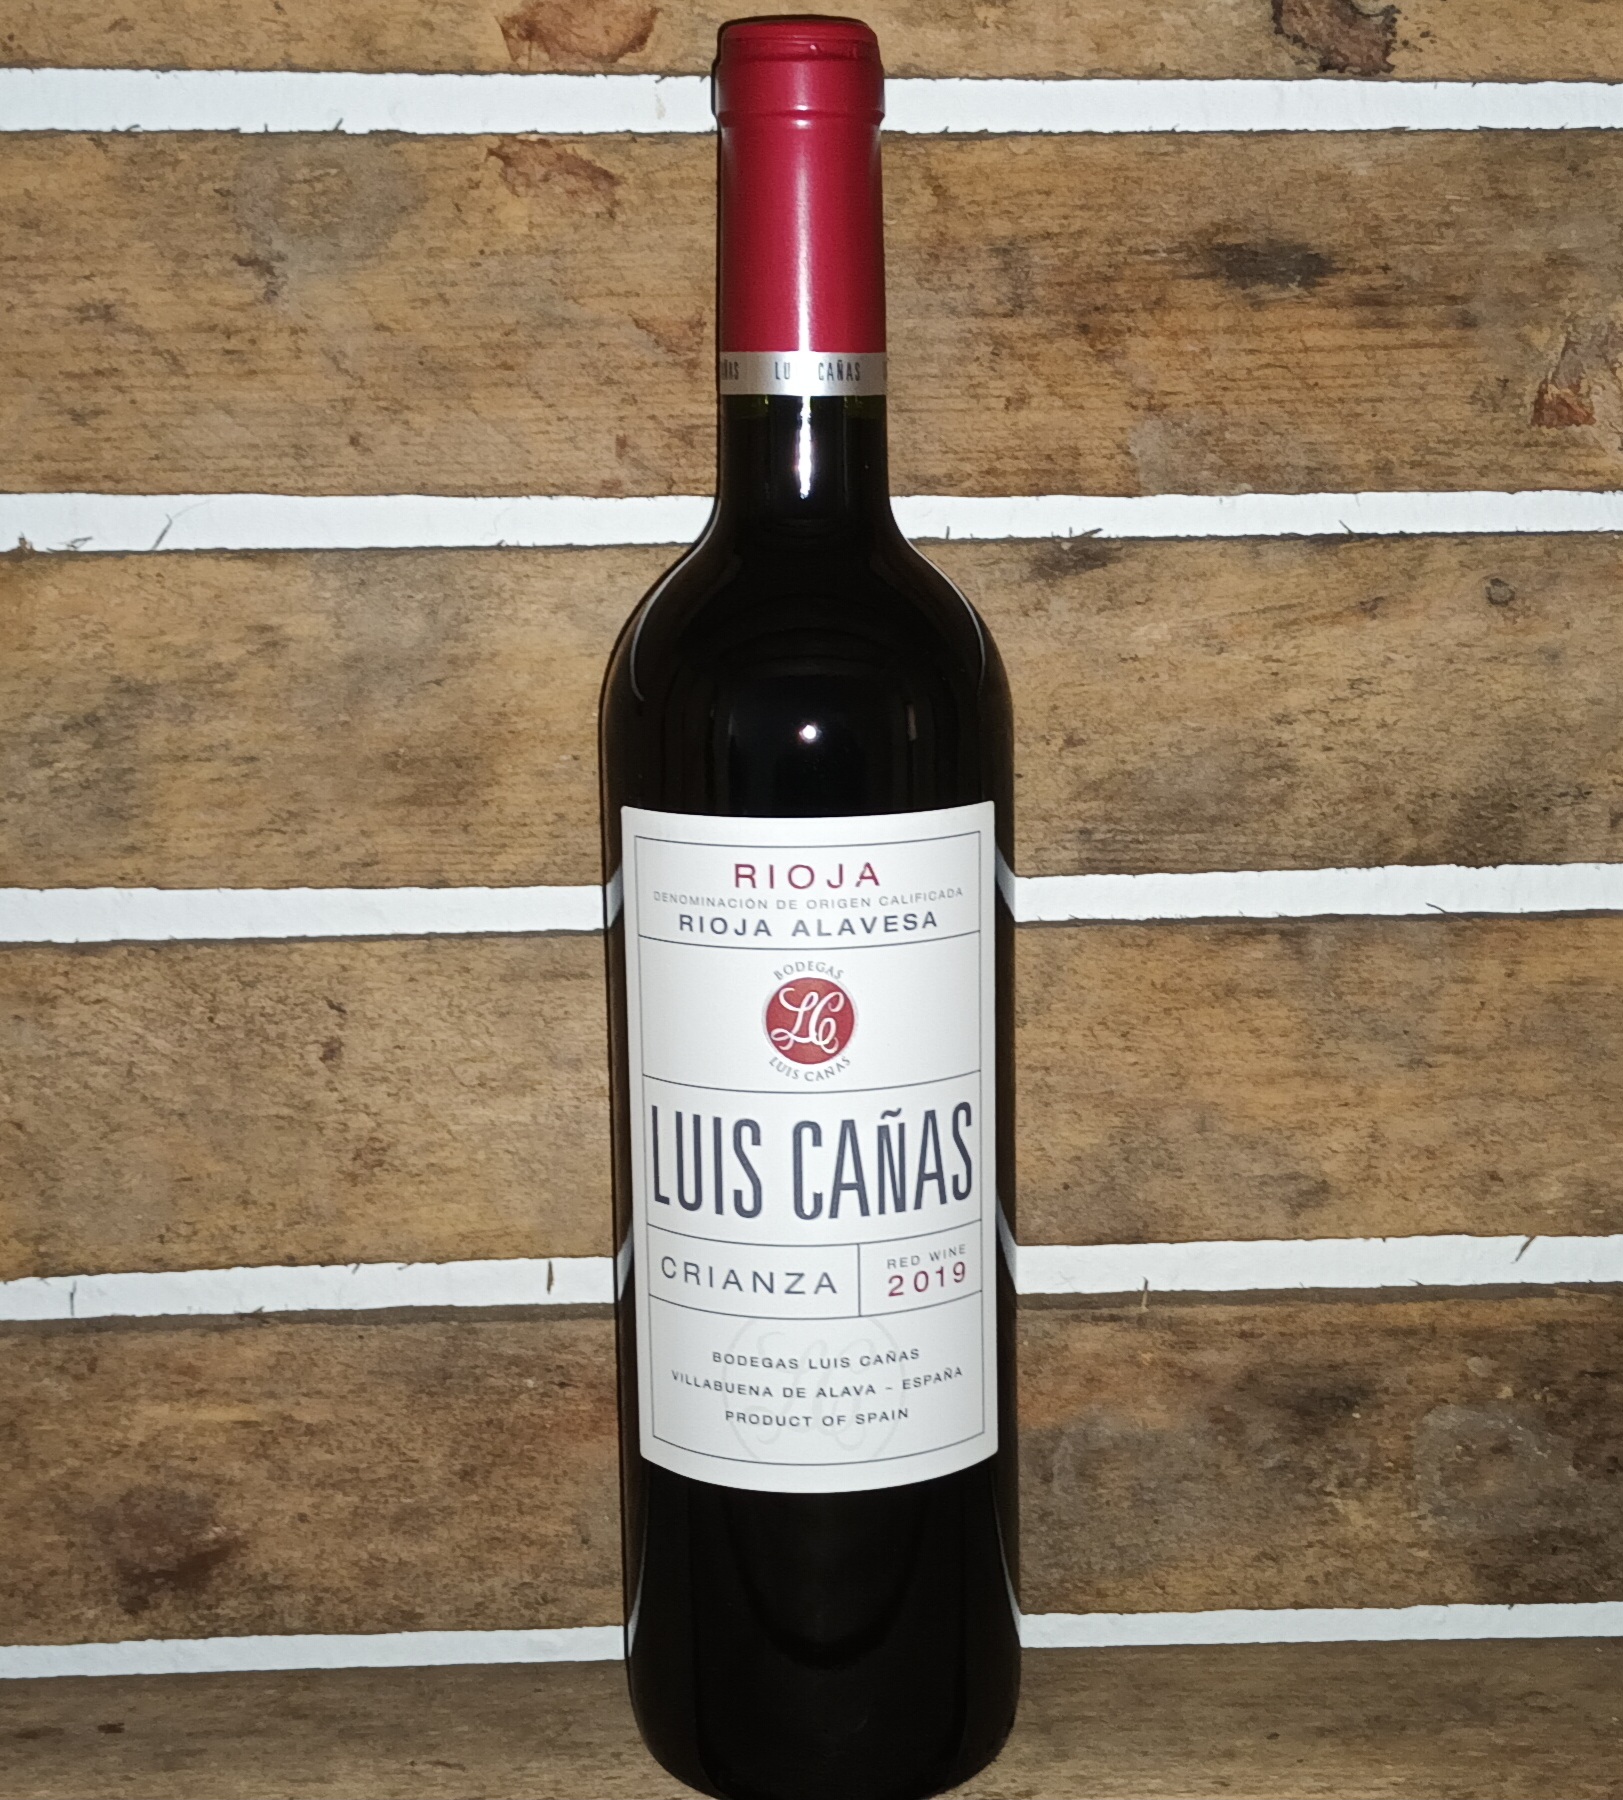 LUIS CANAS CRIANZA 2019, trockner Rotwein 0,75 Liter